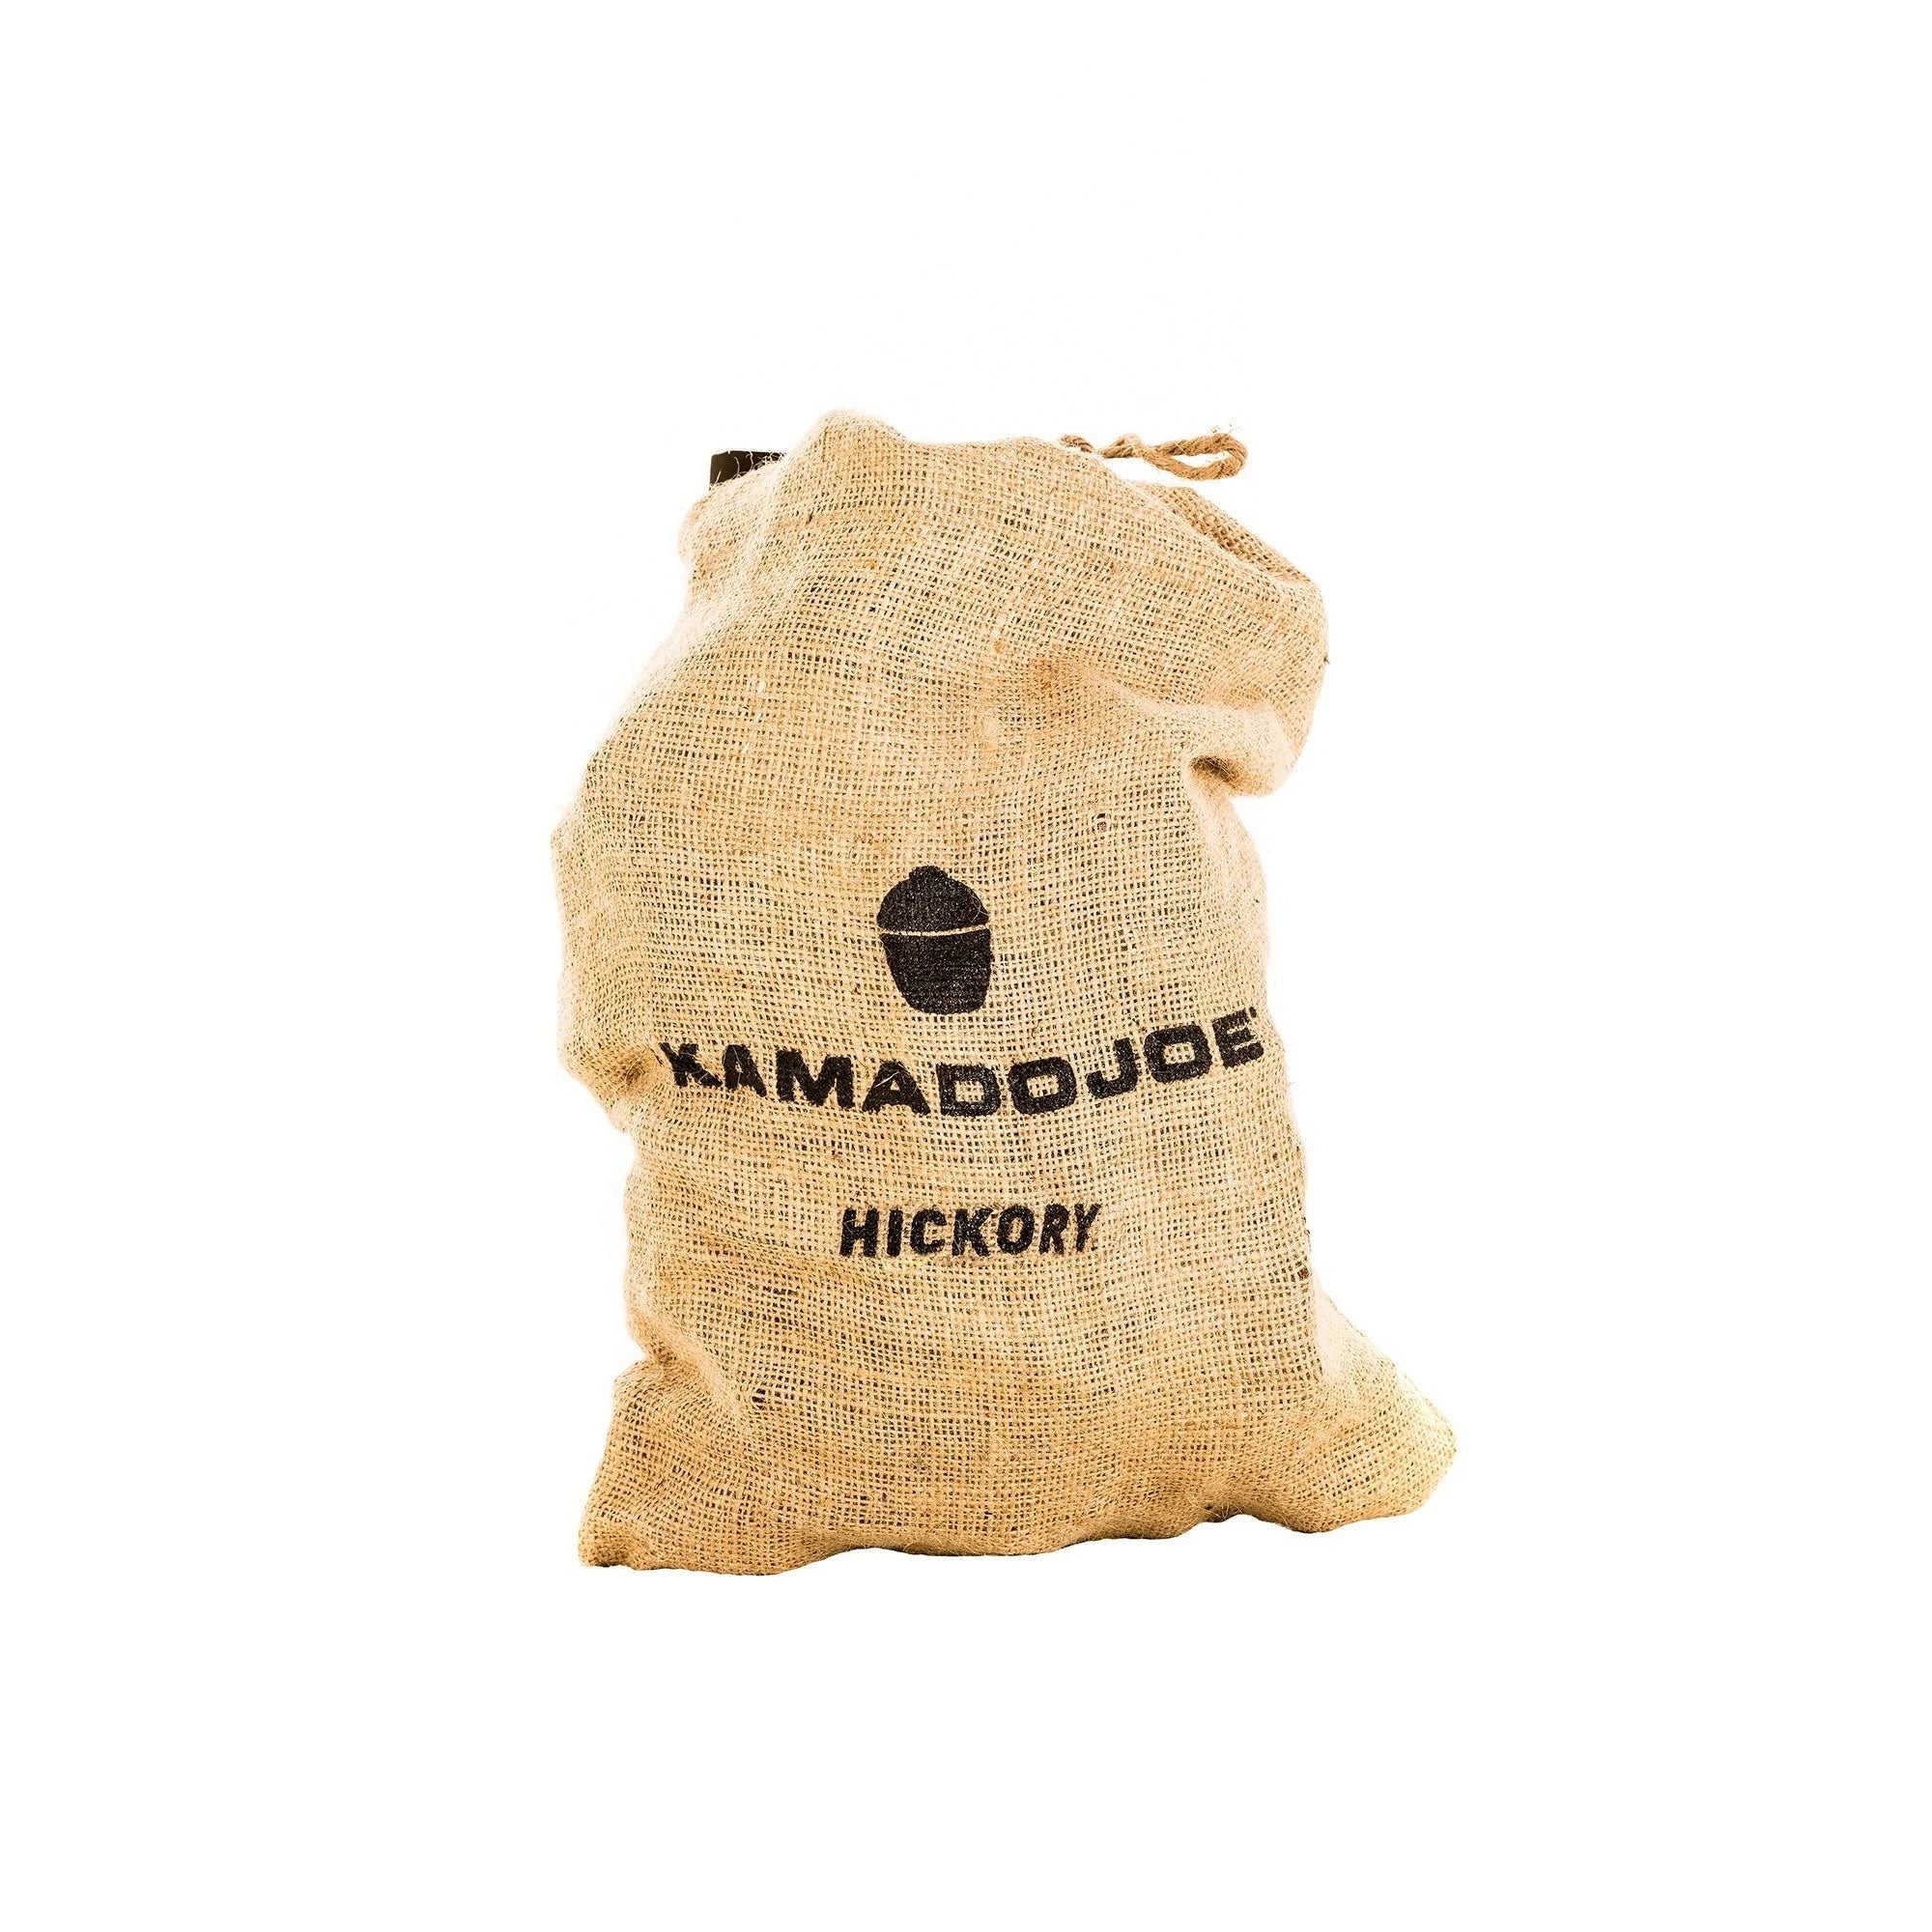 KJ Hickory Chunks 10lb bag